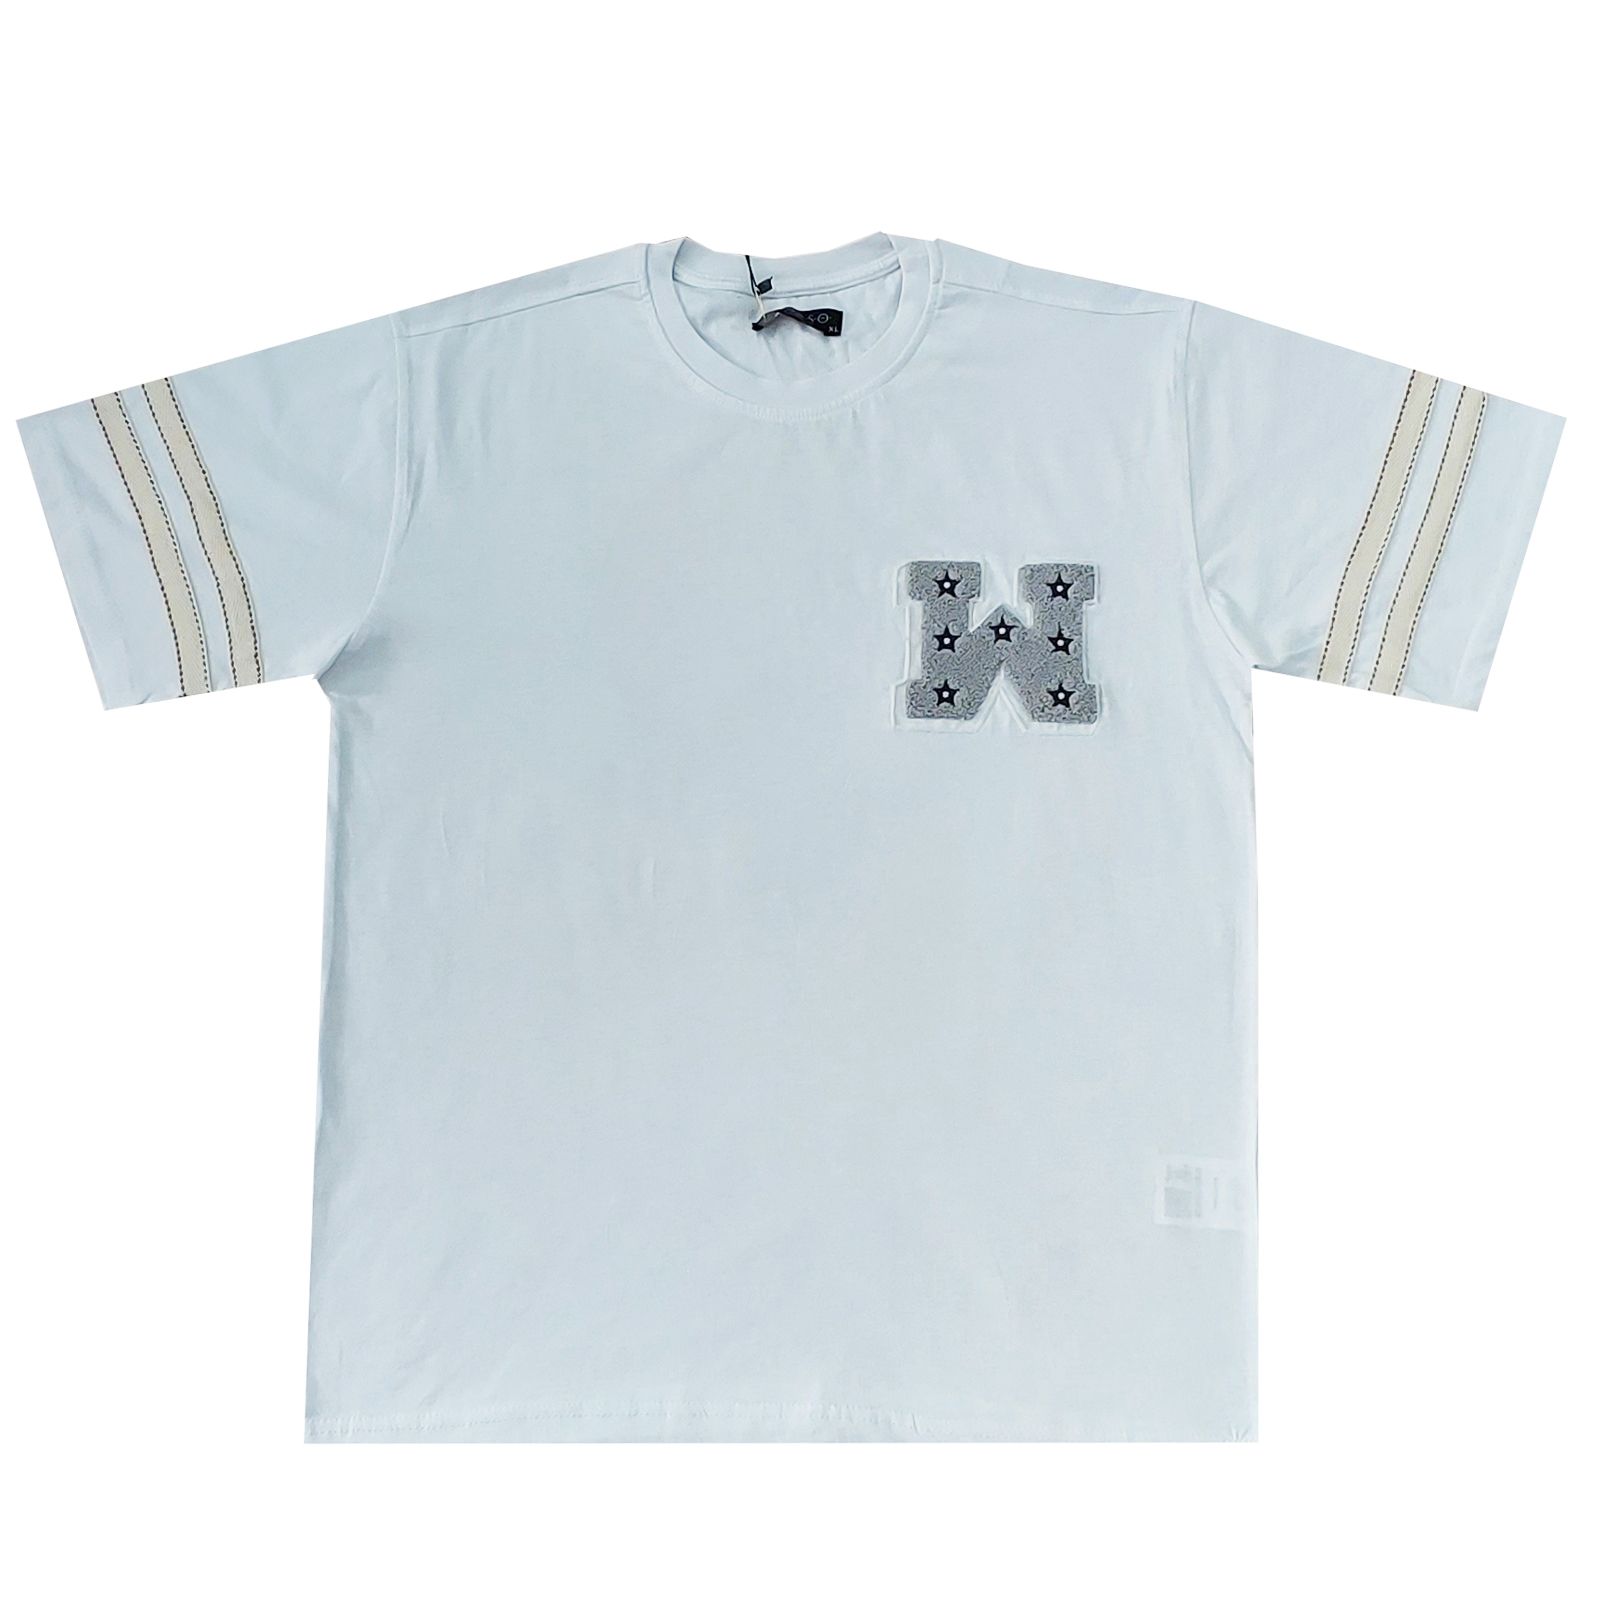 تی شرت آستین کوتاه مردانه مدل ROSSO کد abm2 -  - 1